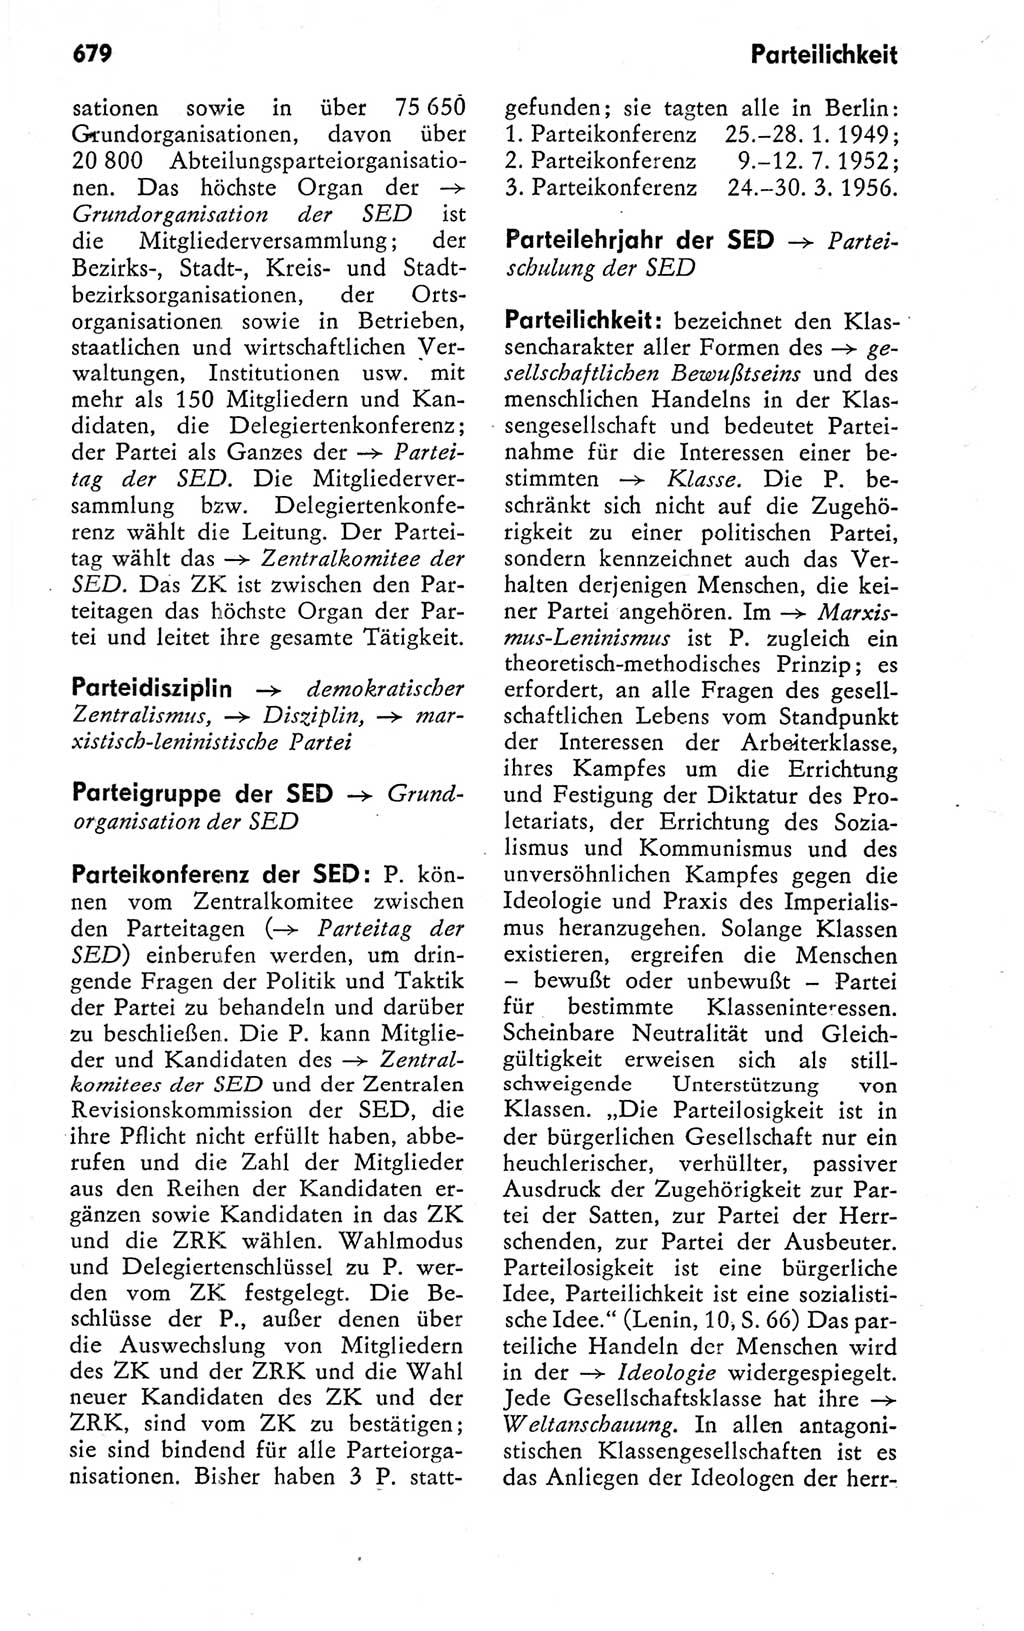 Kleines politisches Wörterbuch [Deutsche Demokratische Republik (DDR)] 1978, Seite 679 (Kl. pol. Wb. DDR 1978, S. 679)